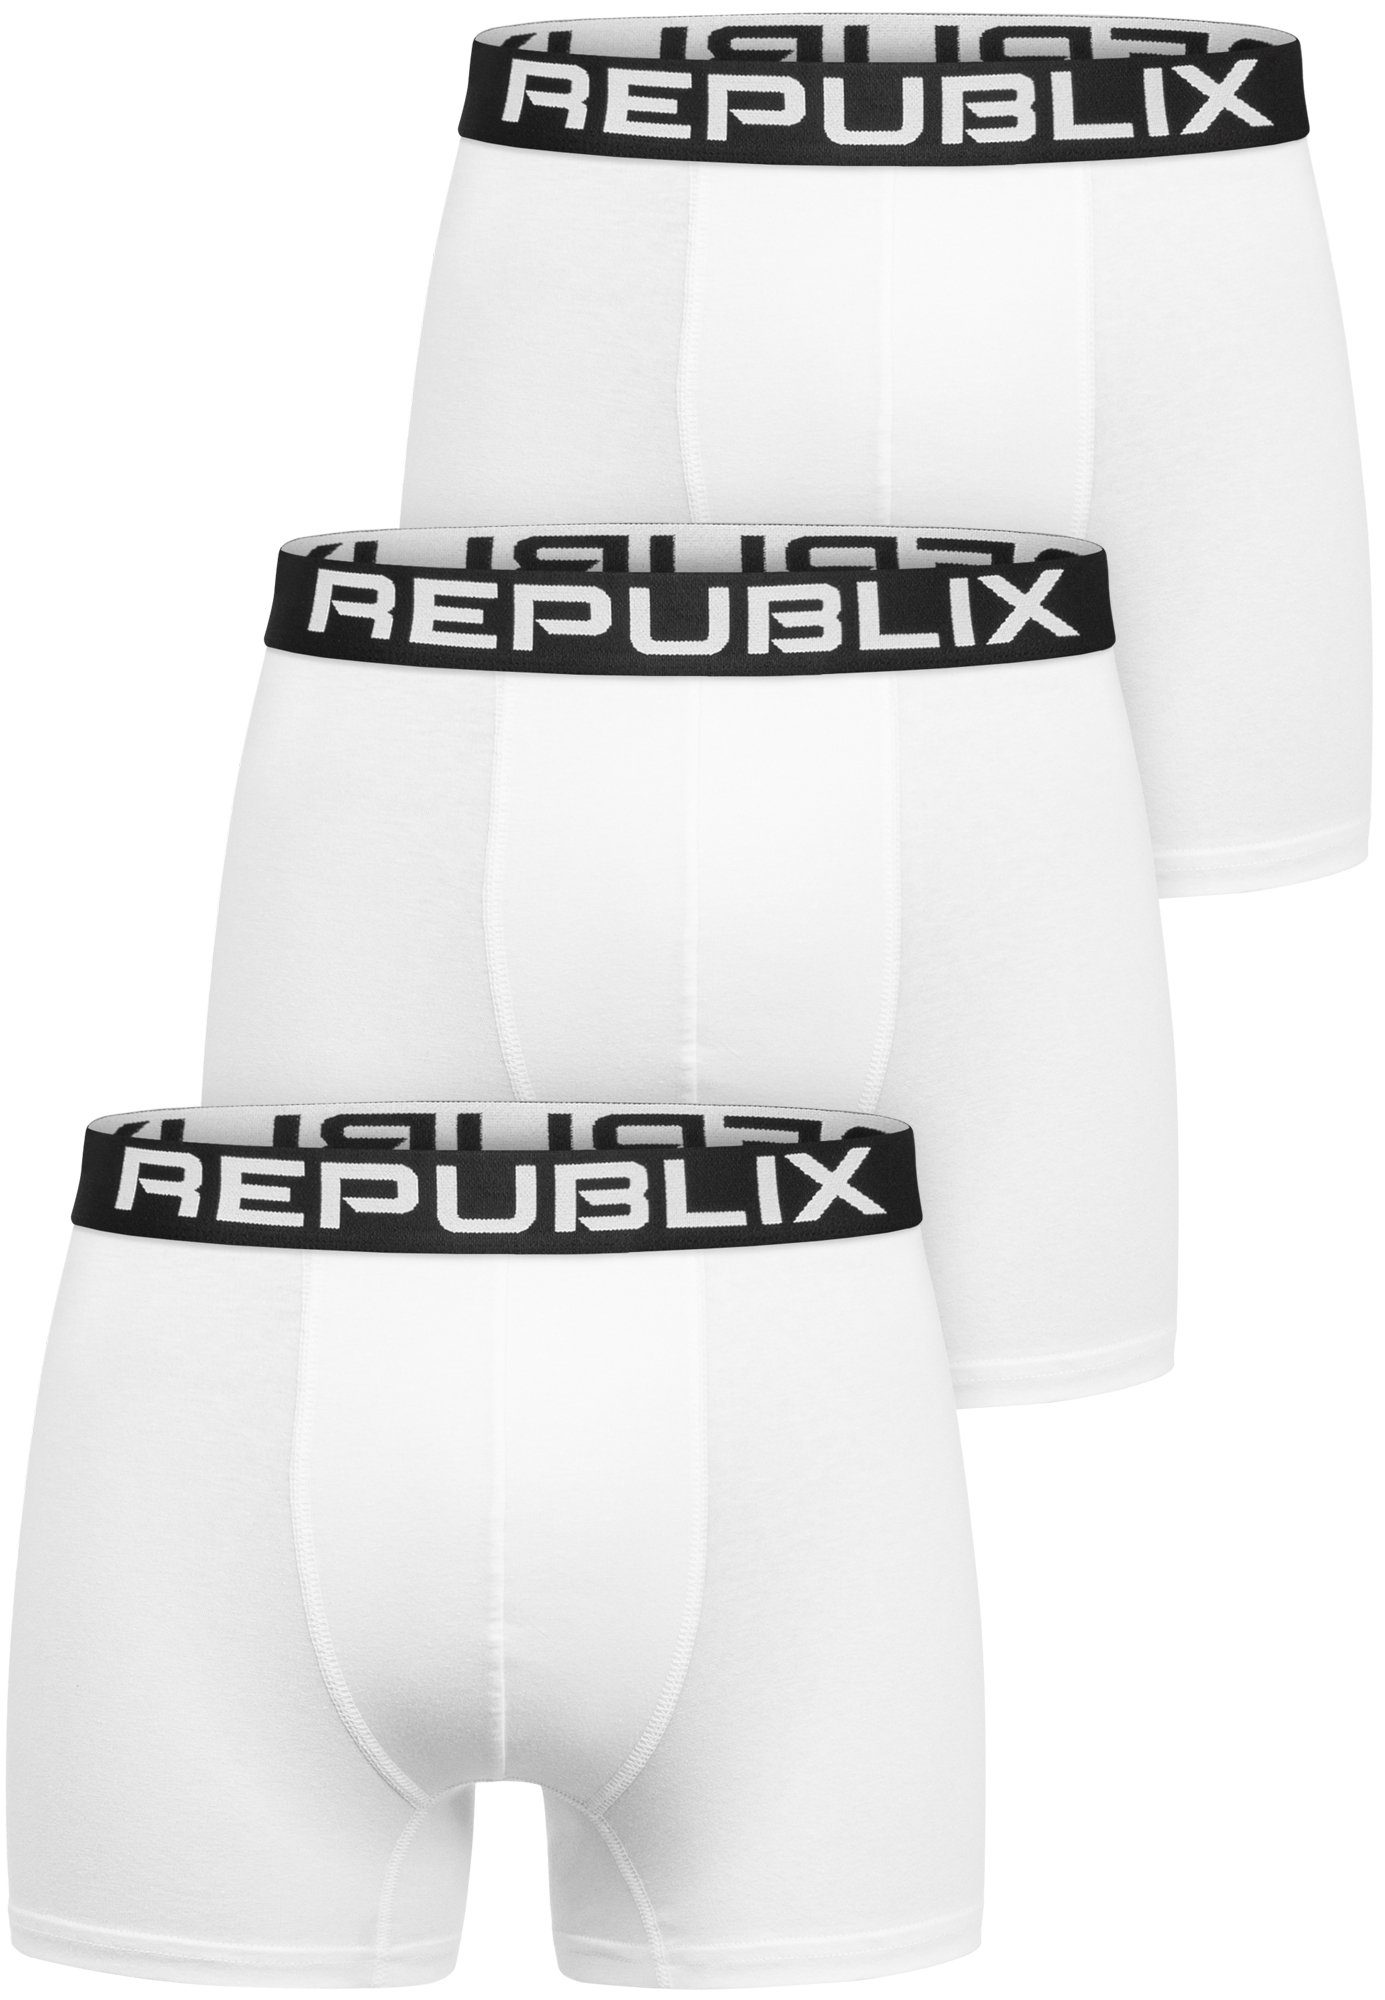 Männer Unterhose Boxershorts Baumwolle DON Weiß/Schwarz REPUBLIX Herren (3er-Pack) Unterwäsche